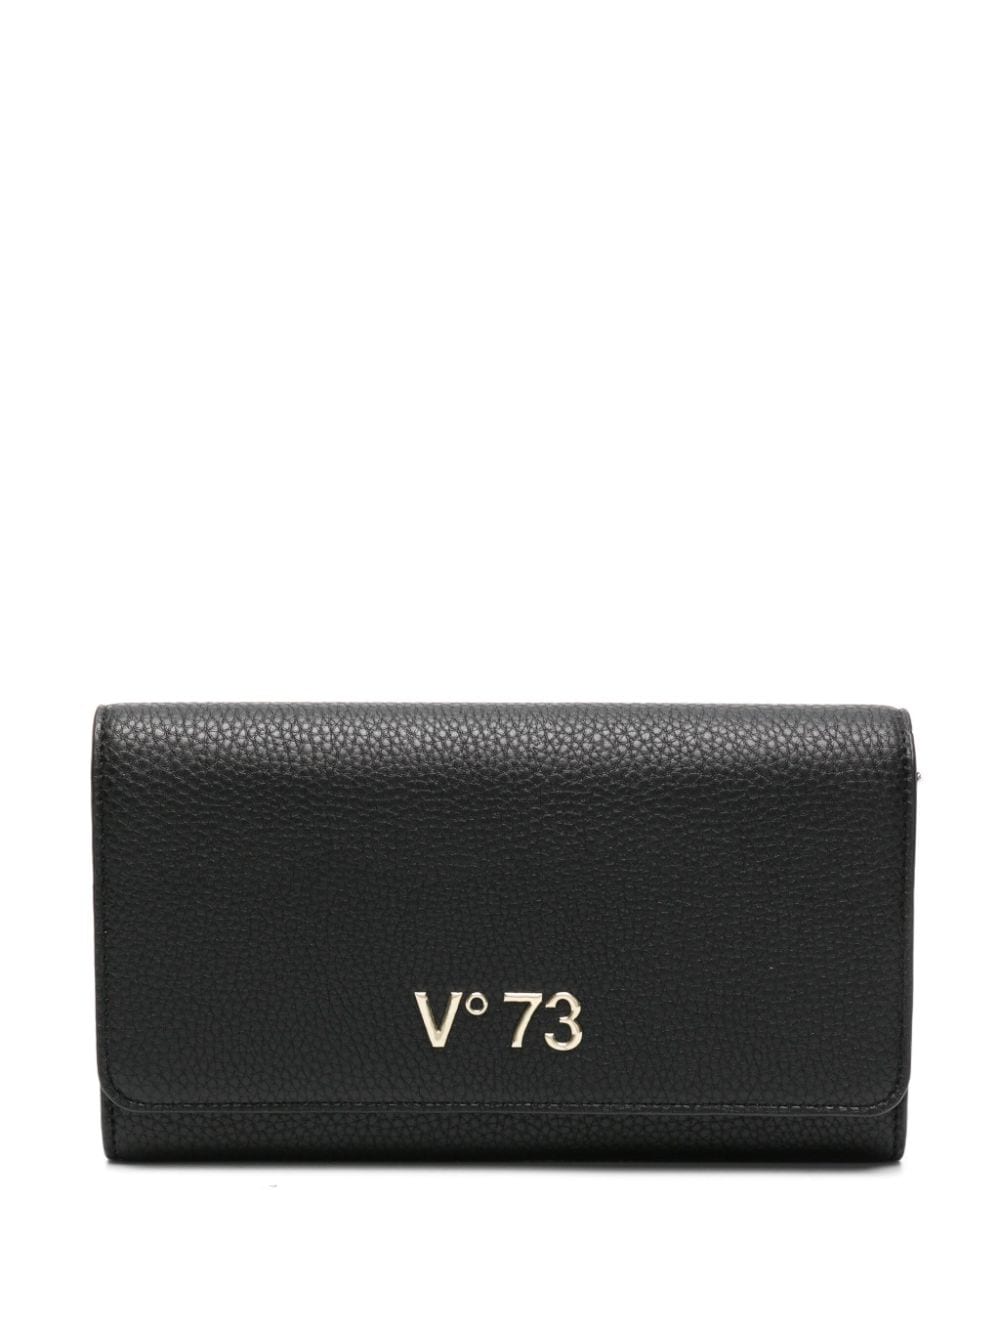 V73 Logo标牌人造皮革钱包 In Black